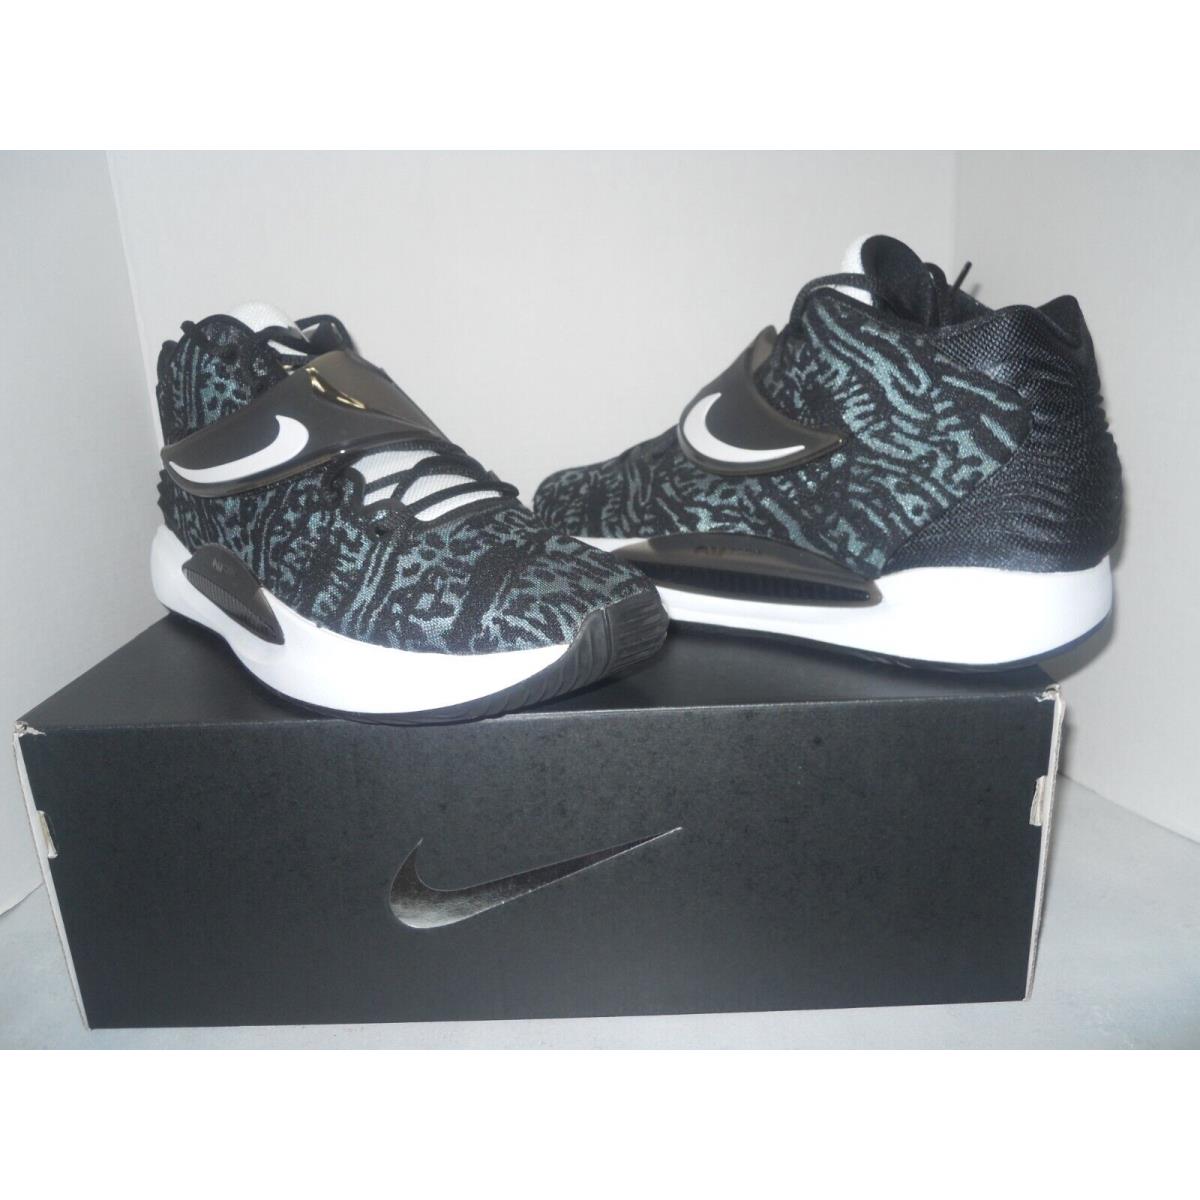 Nike TB Promo DM5040-001 KD 14 Xiv Men Basketball Shoes Sneaker Size 8.5 Black